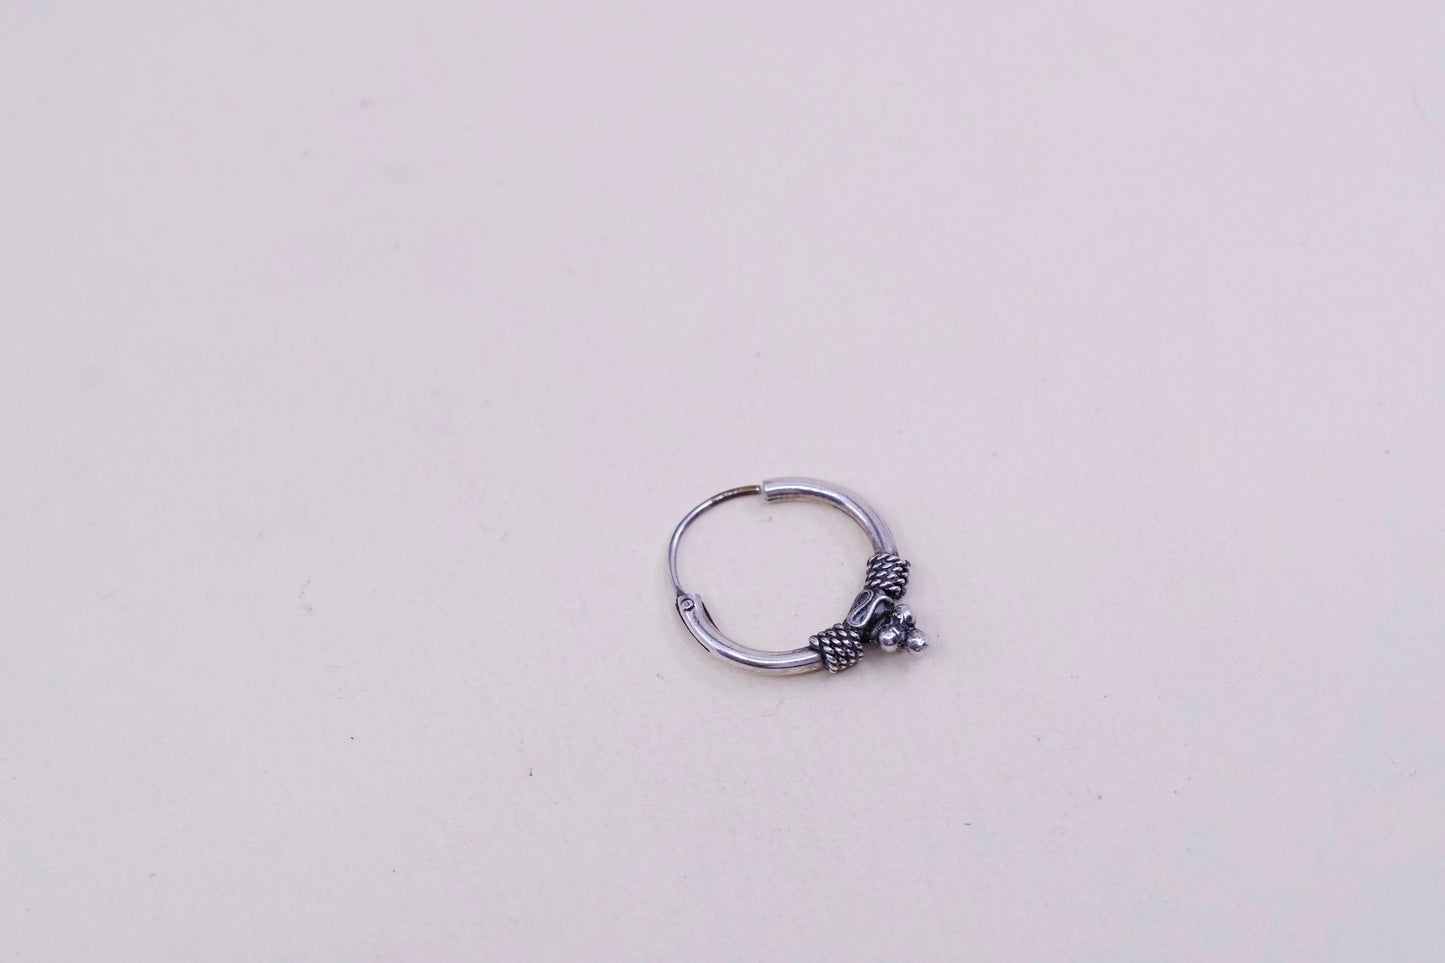 0.5”, Vintage sterling silver loop earrings, minimalist, 925 twisted hoops